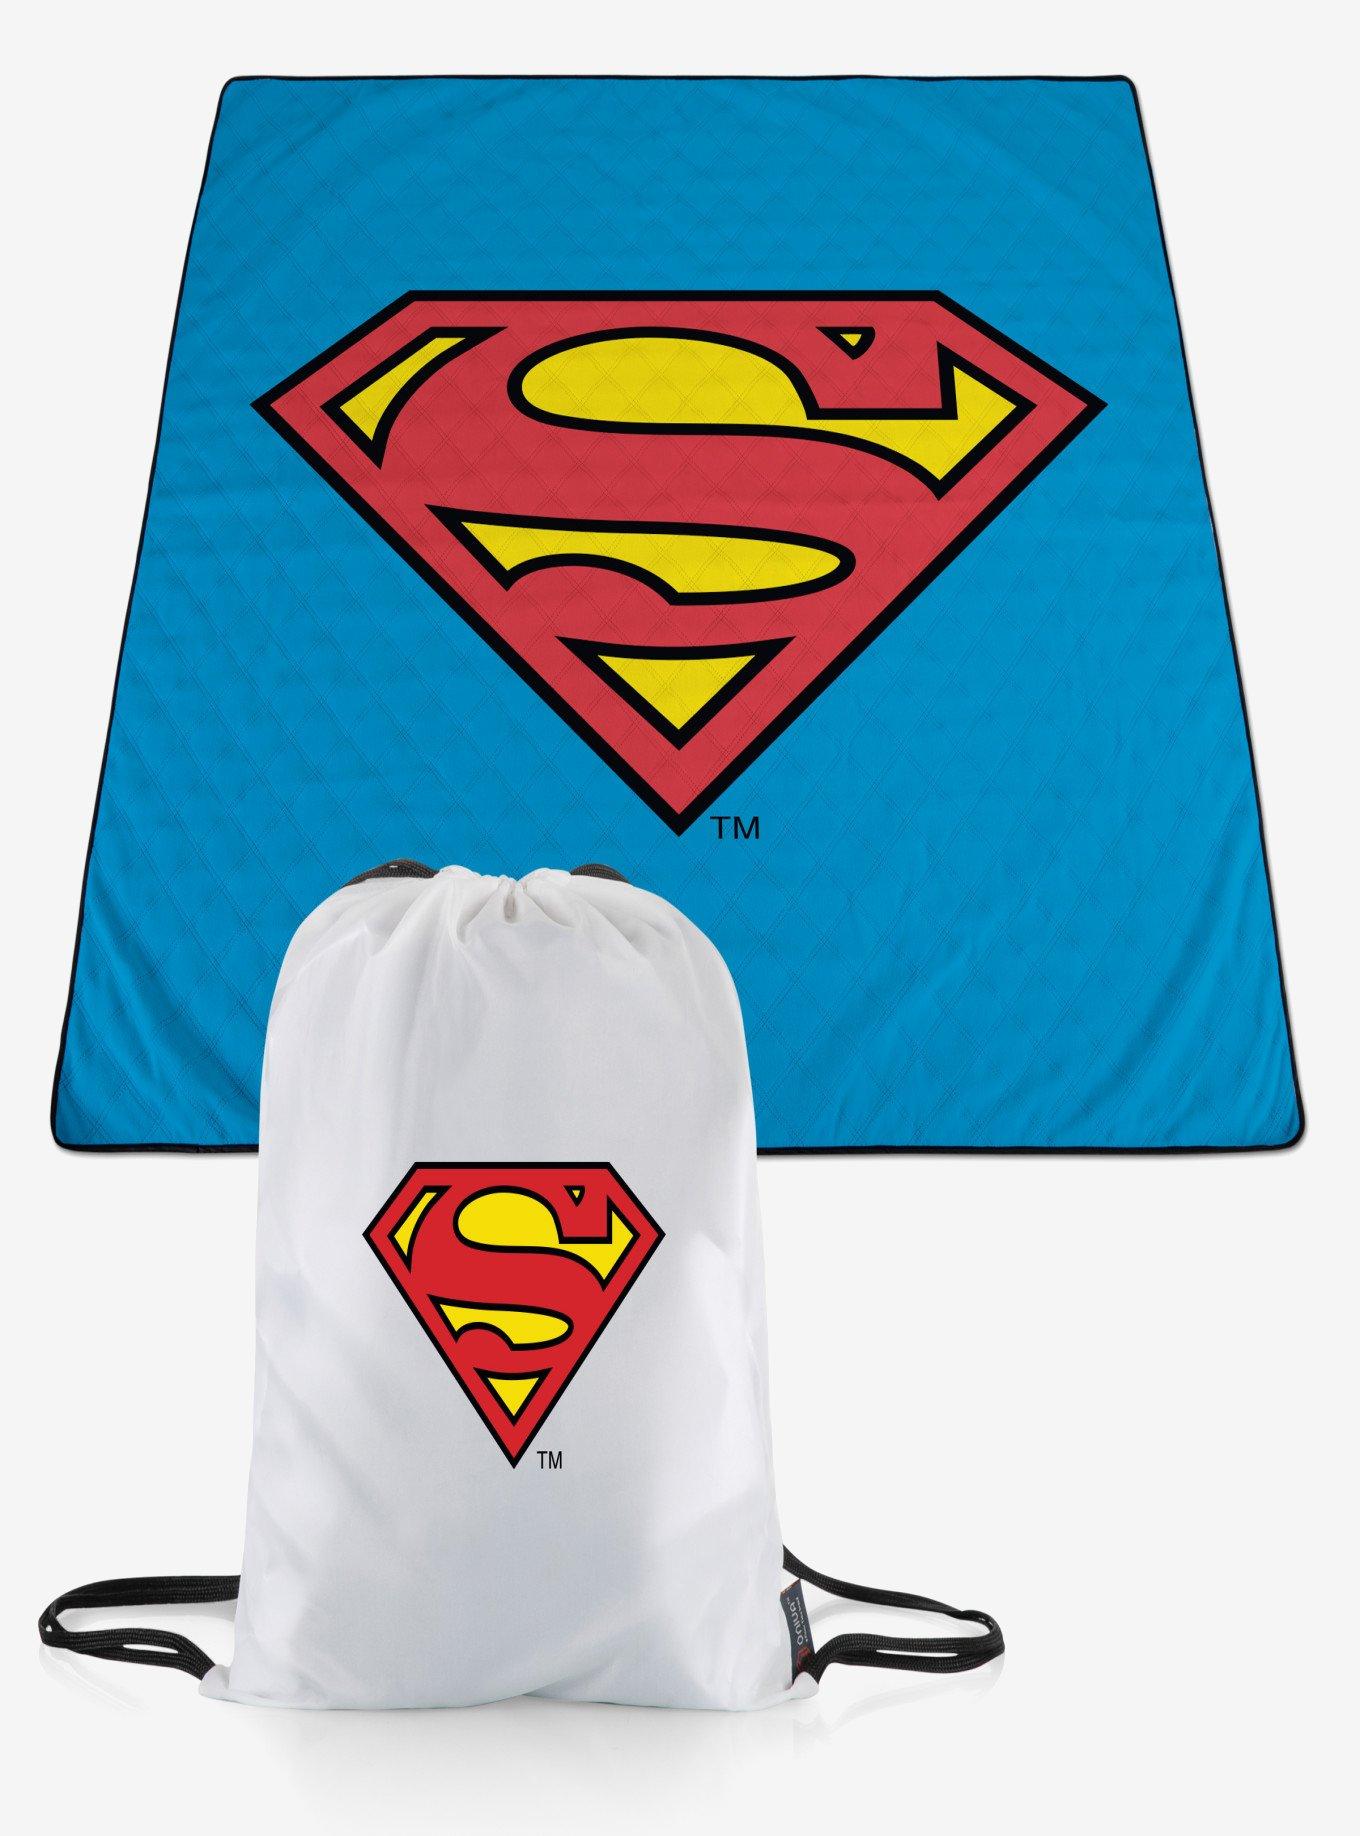 DC Comics Superman Impresa Picnic Blanket